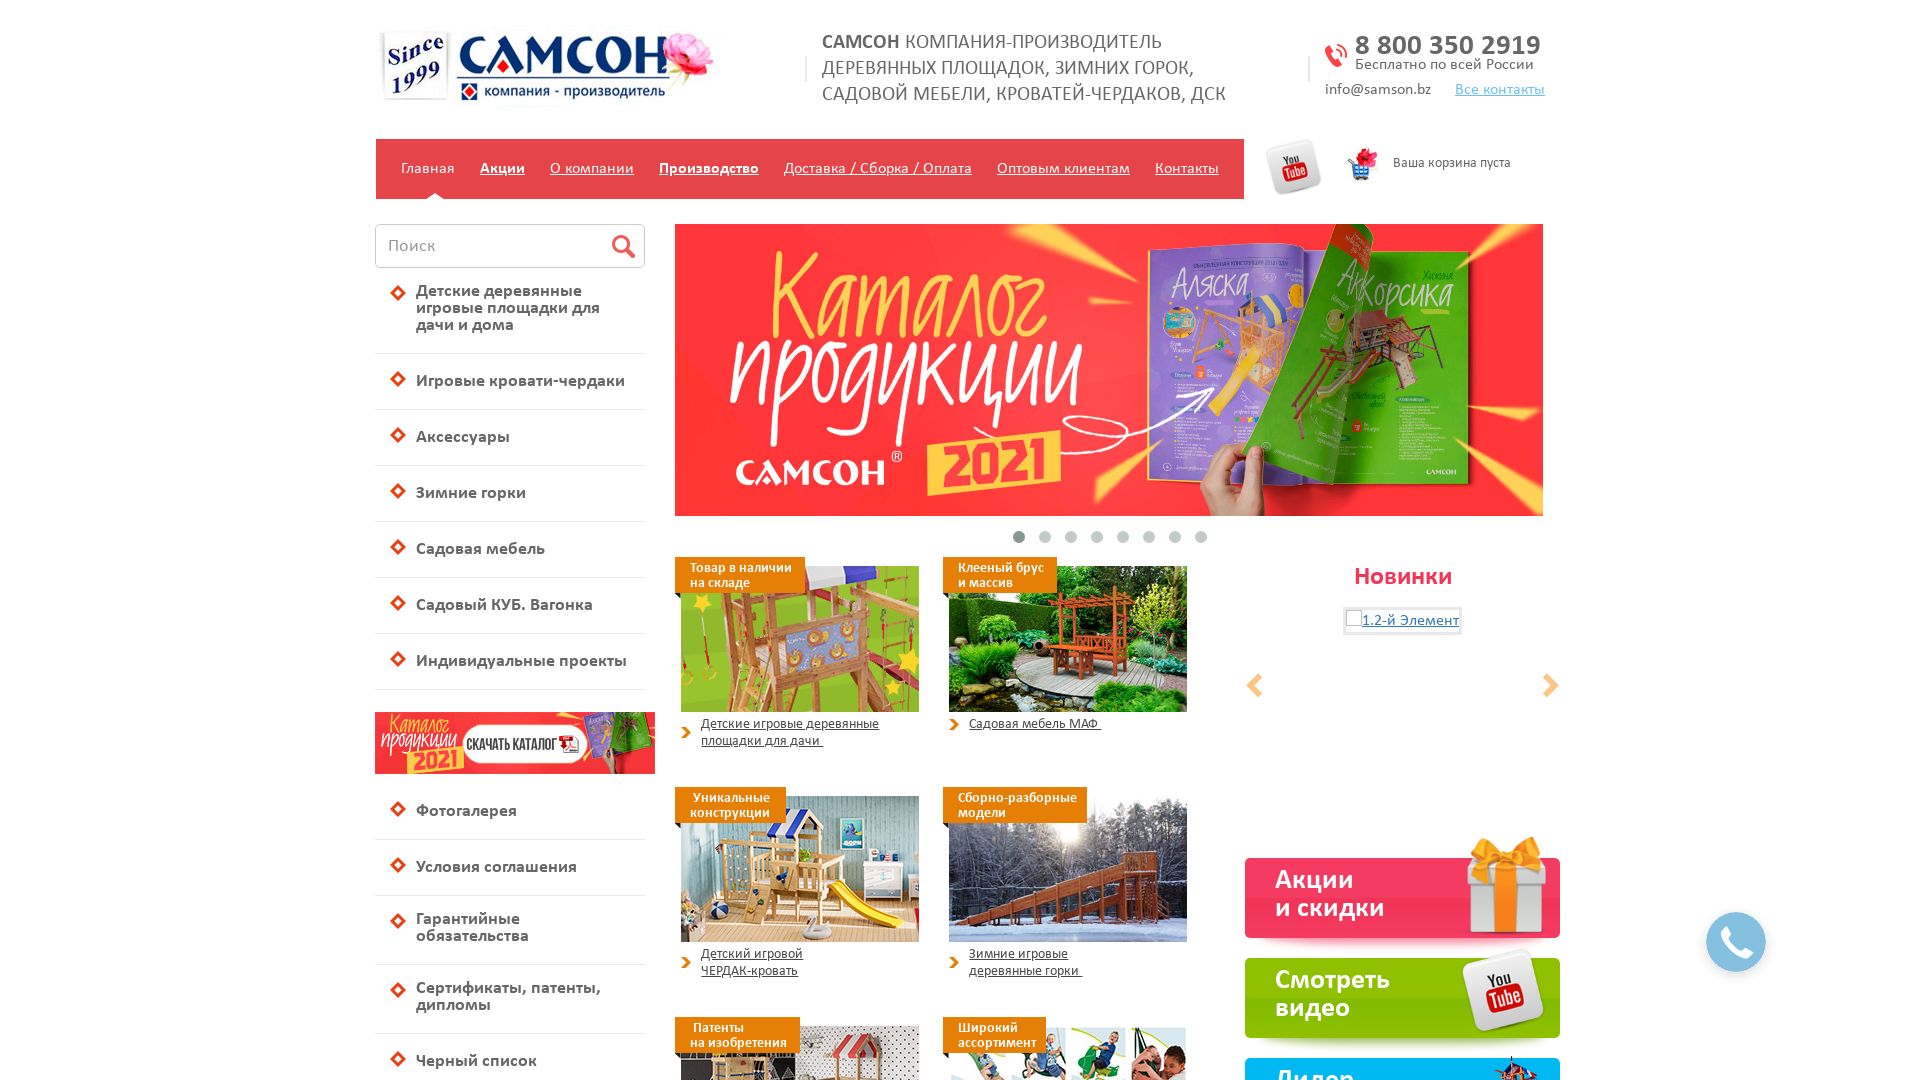 Website status 1090983.ru is   ONLINE